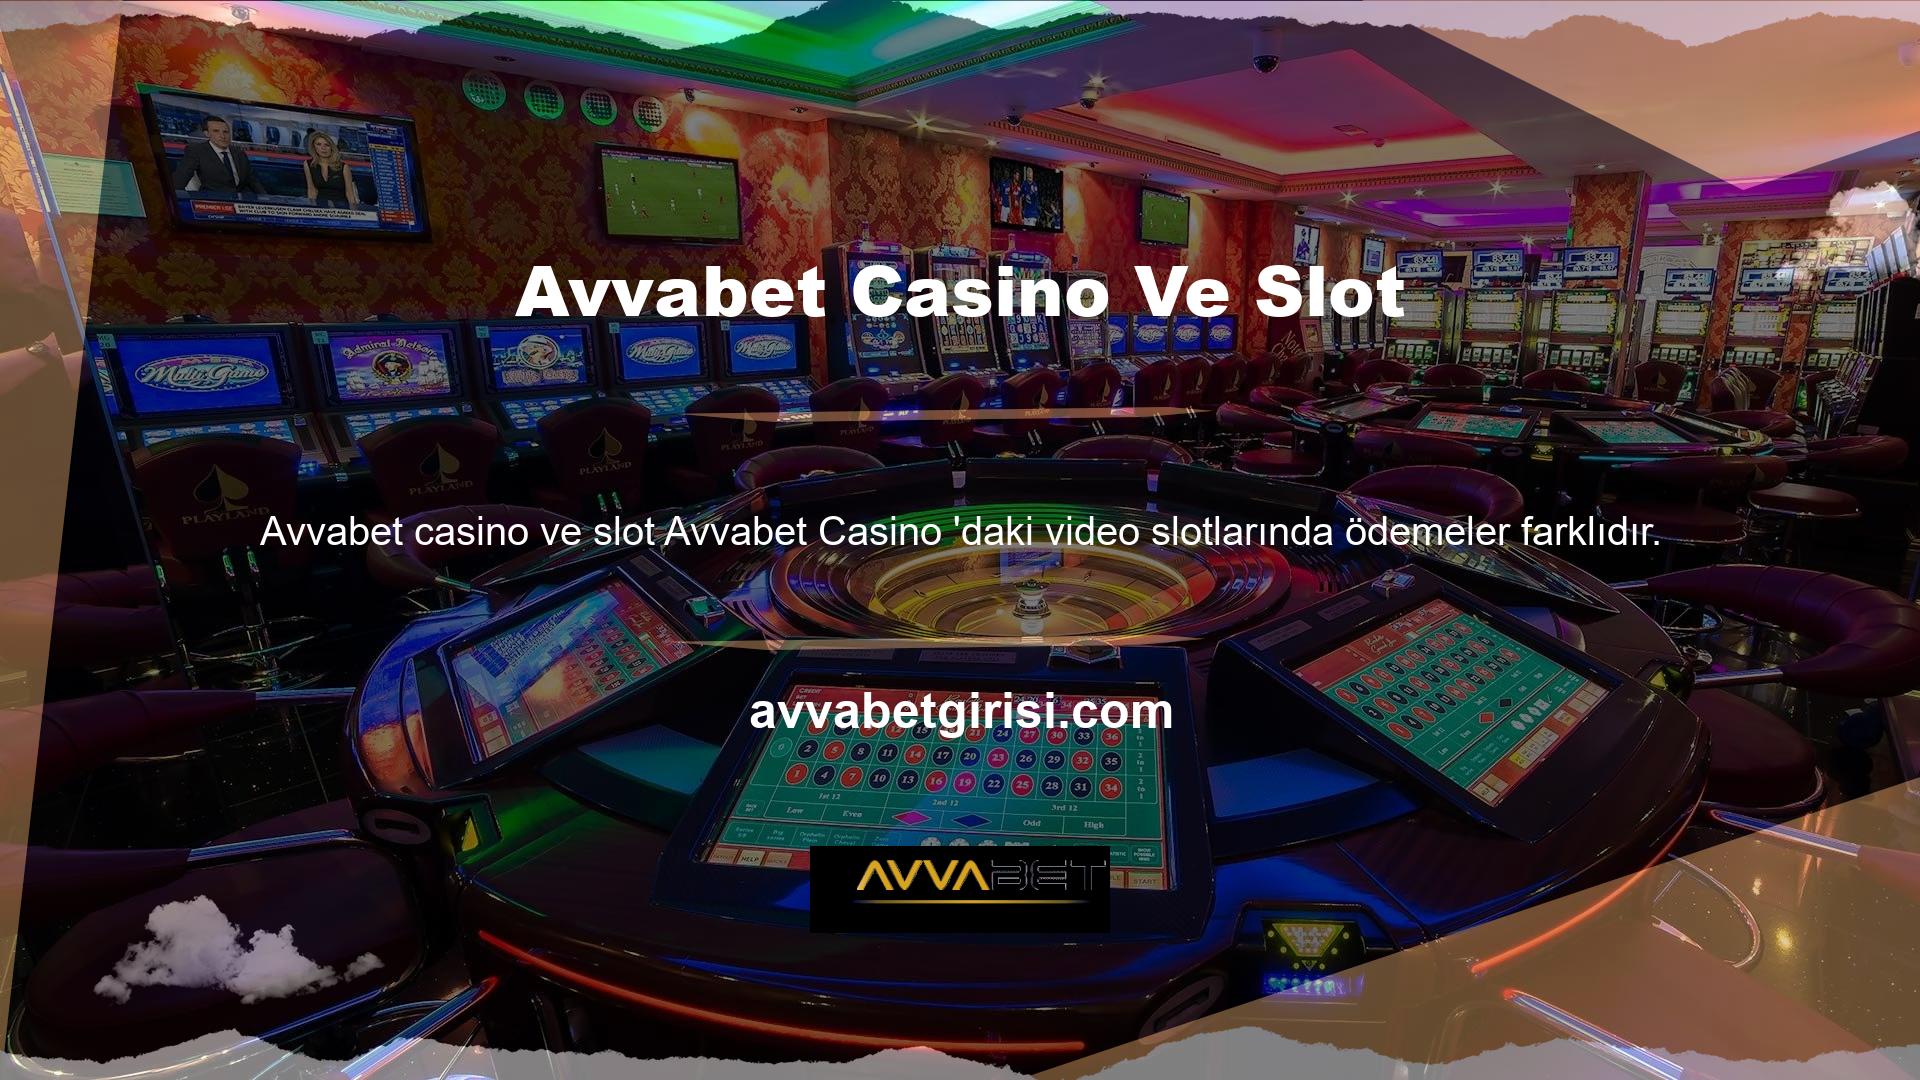 Video slotları, casino slotlarını oynayan oyuncular tarafından büyük miktarda kazanılabilir